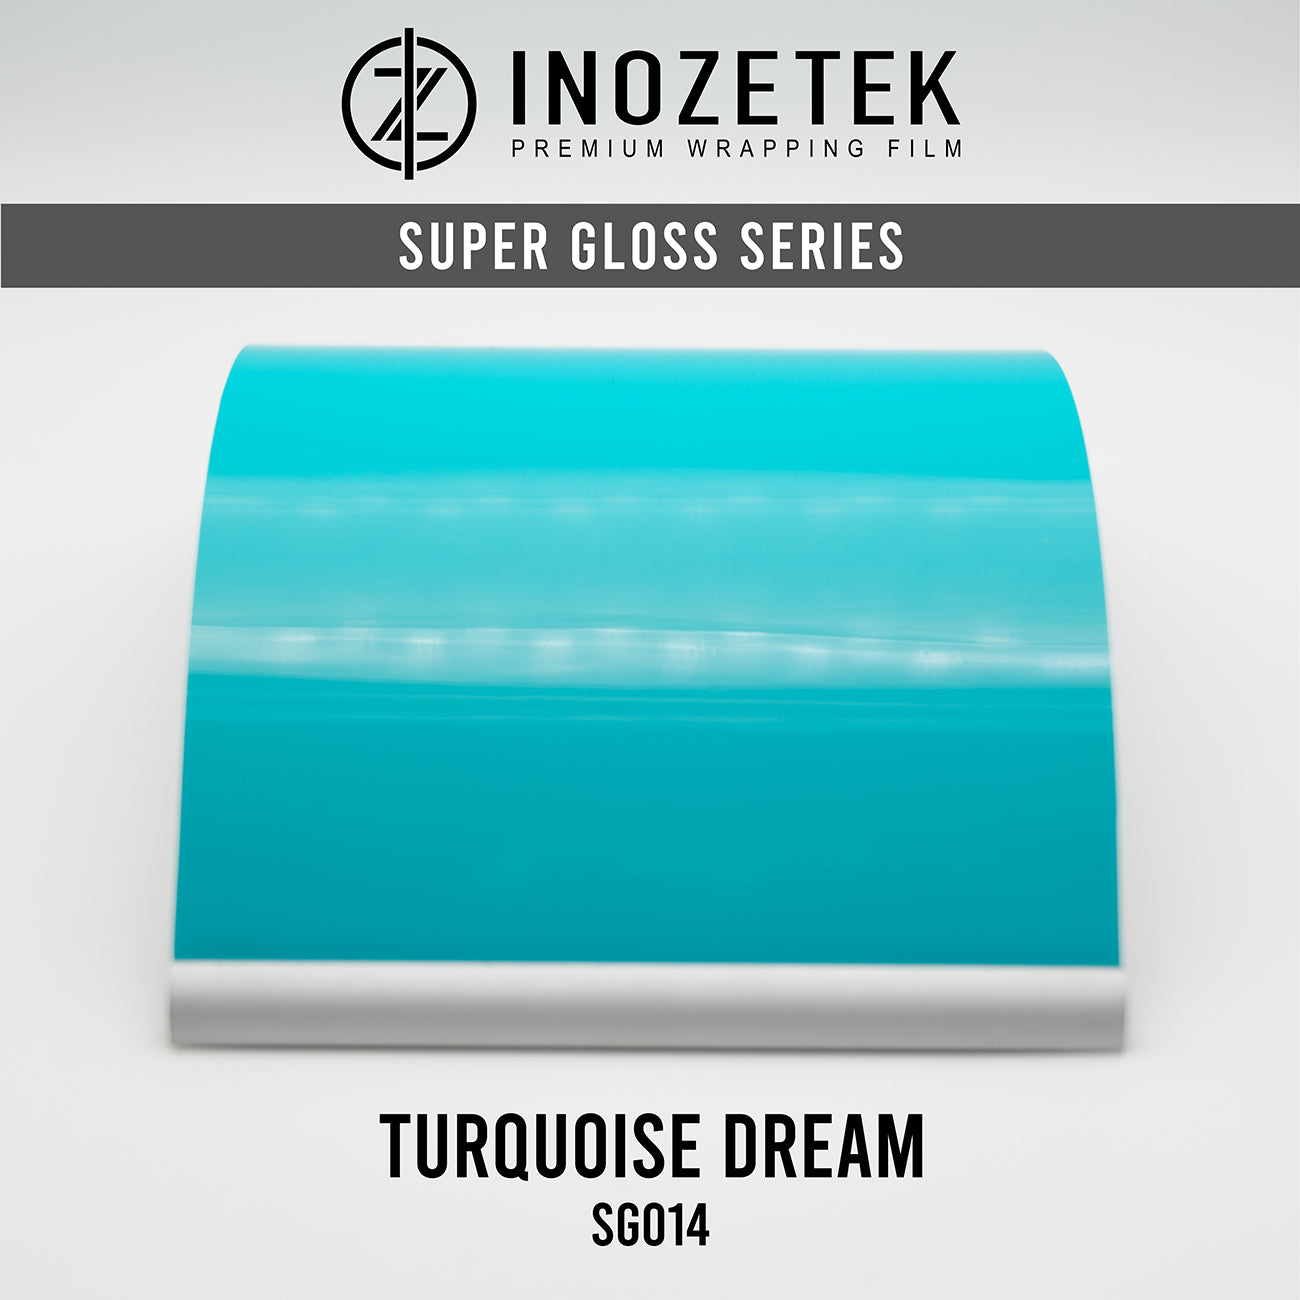 Super Gloss Turquoise Dream - Inozetek USA